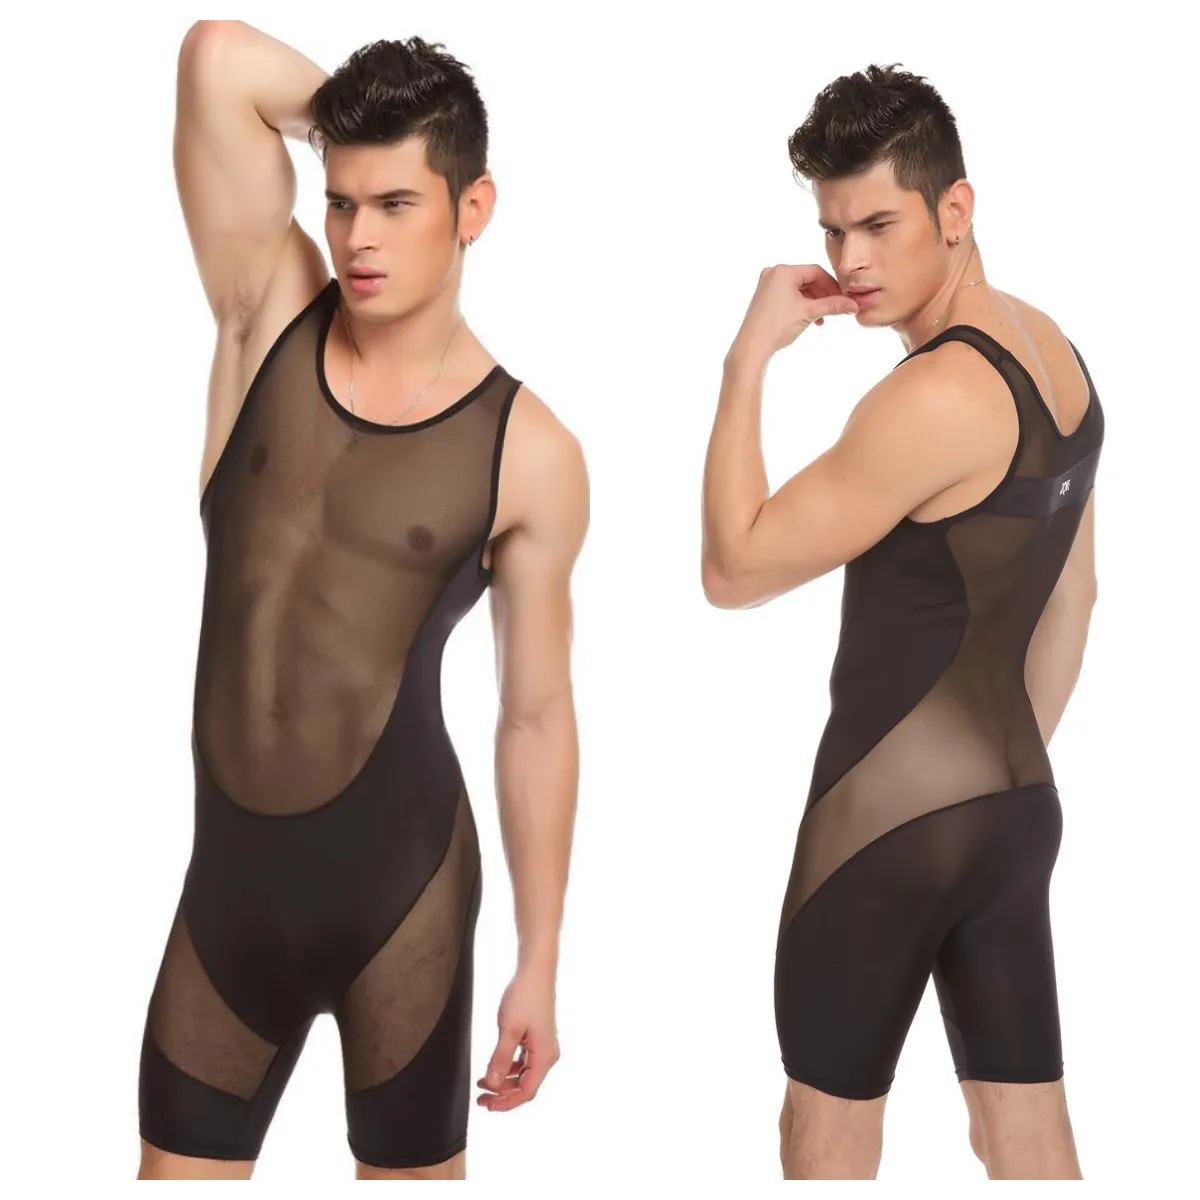 JQK Brand Sexig underskjortor Bodysuits Mens Body Suit Sheer See Through Sheer Gay Men Underwear Wear